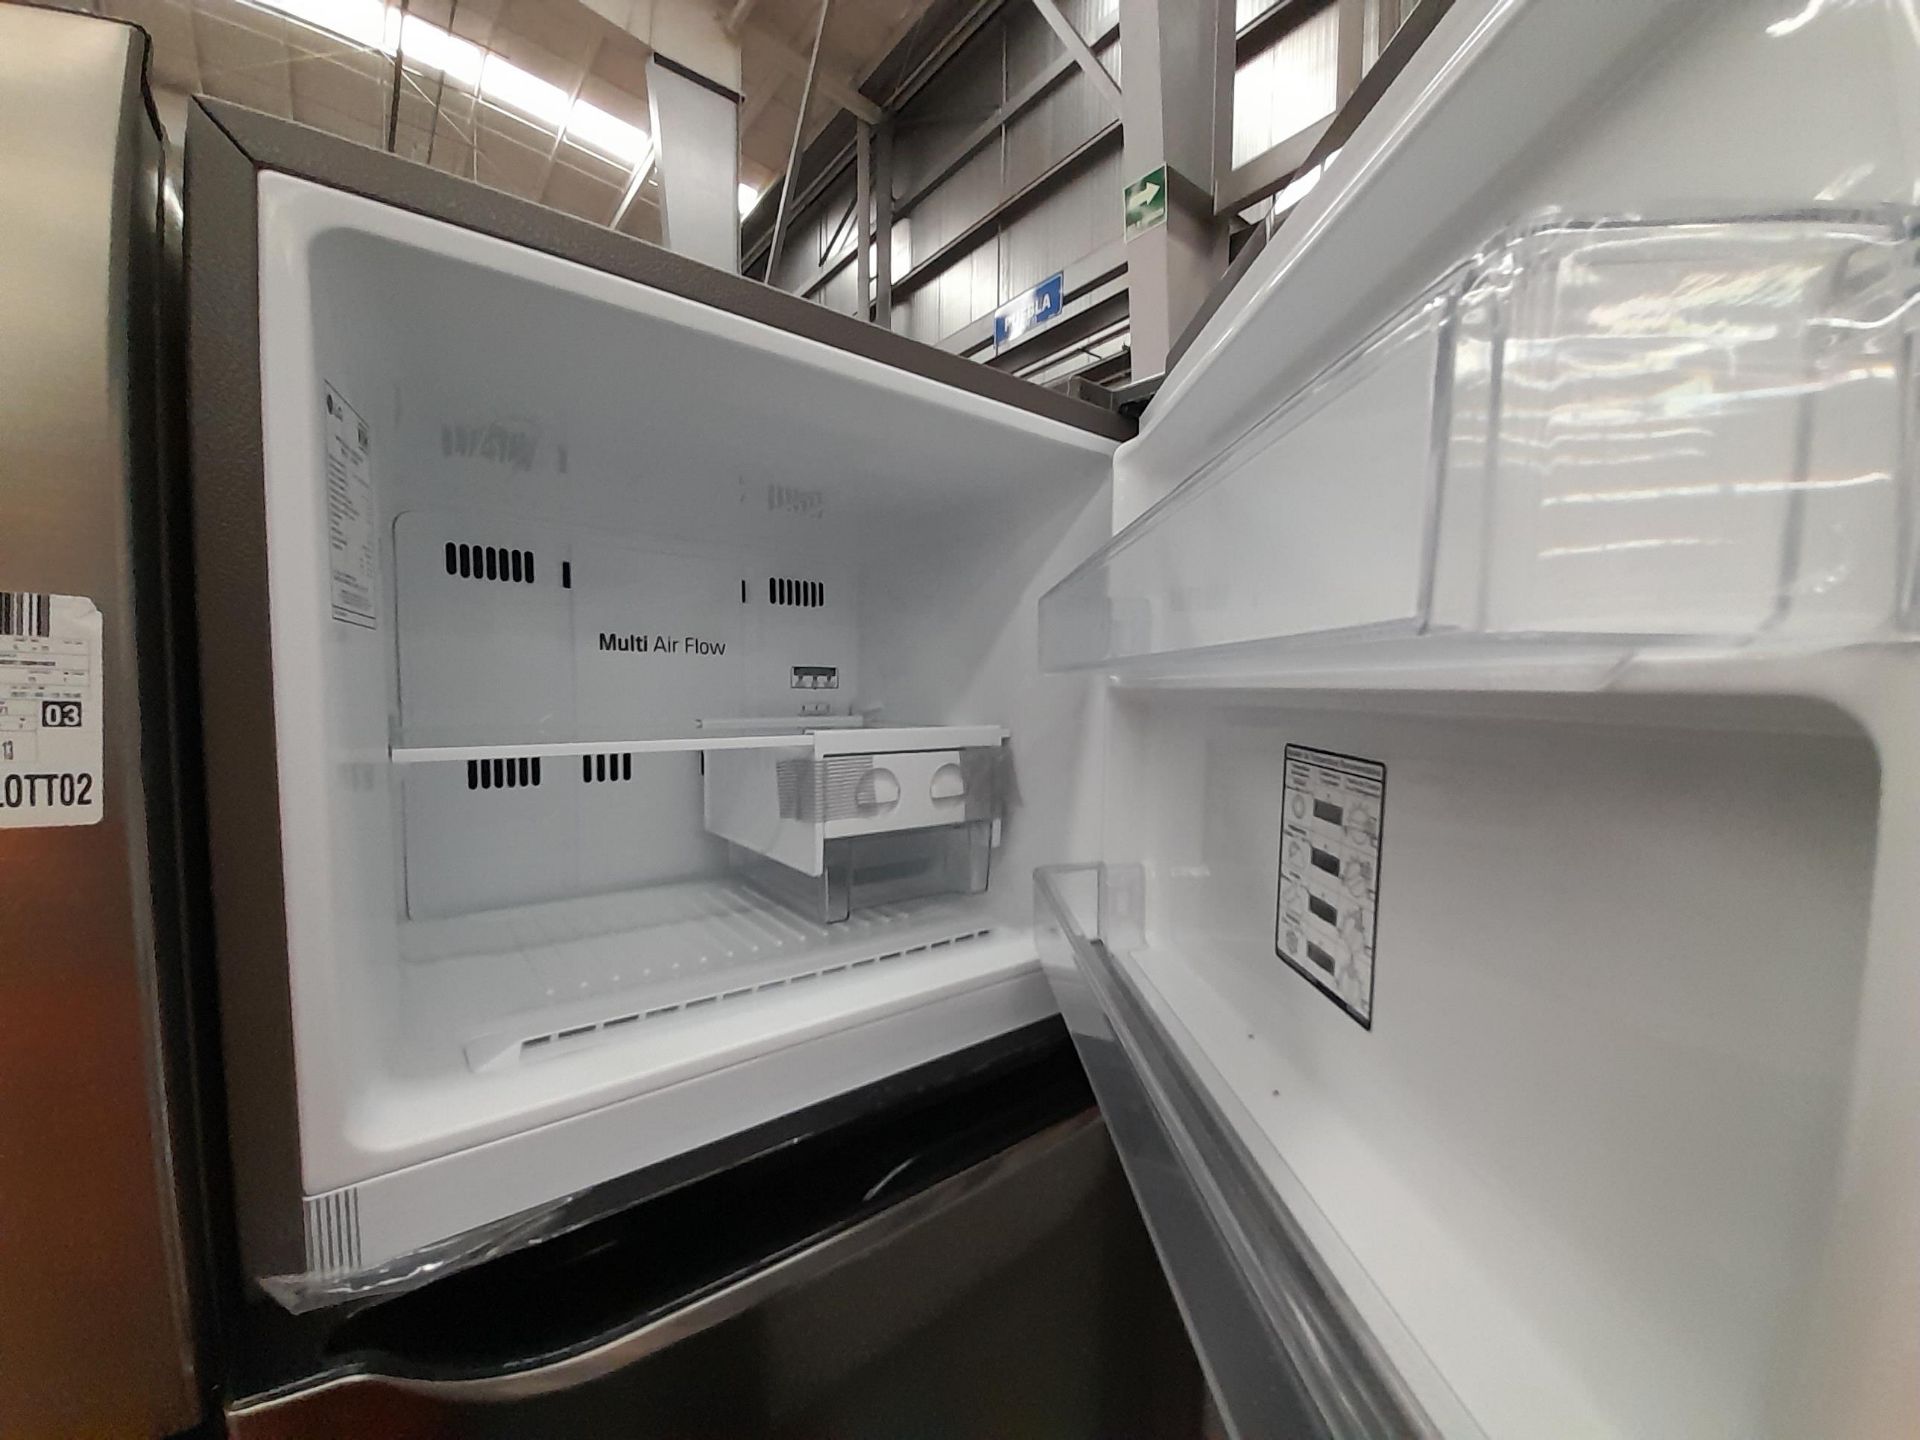 Lote de 2 refrigeradores Contiene: 1 Refrigerador Con Dispensador De Agua Marca LG, Modelo GT32WDC, - Image 5 of 8